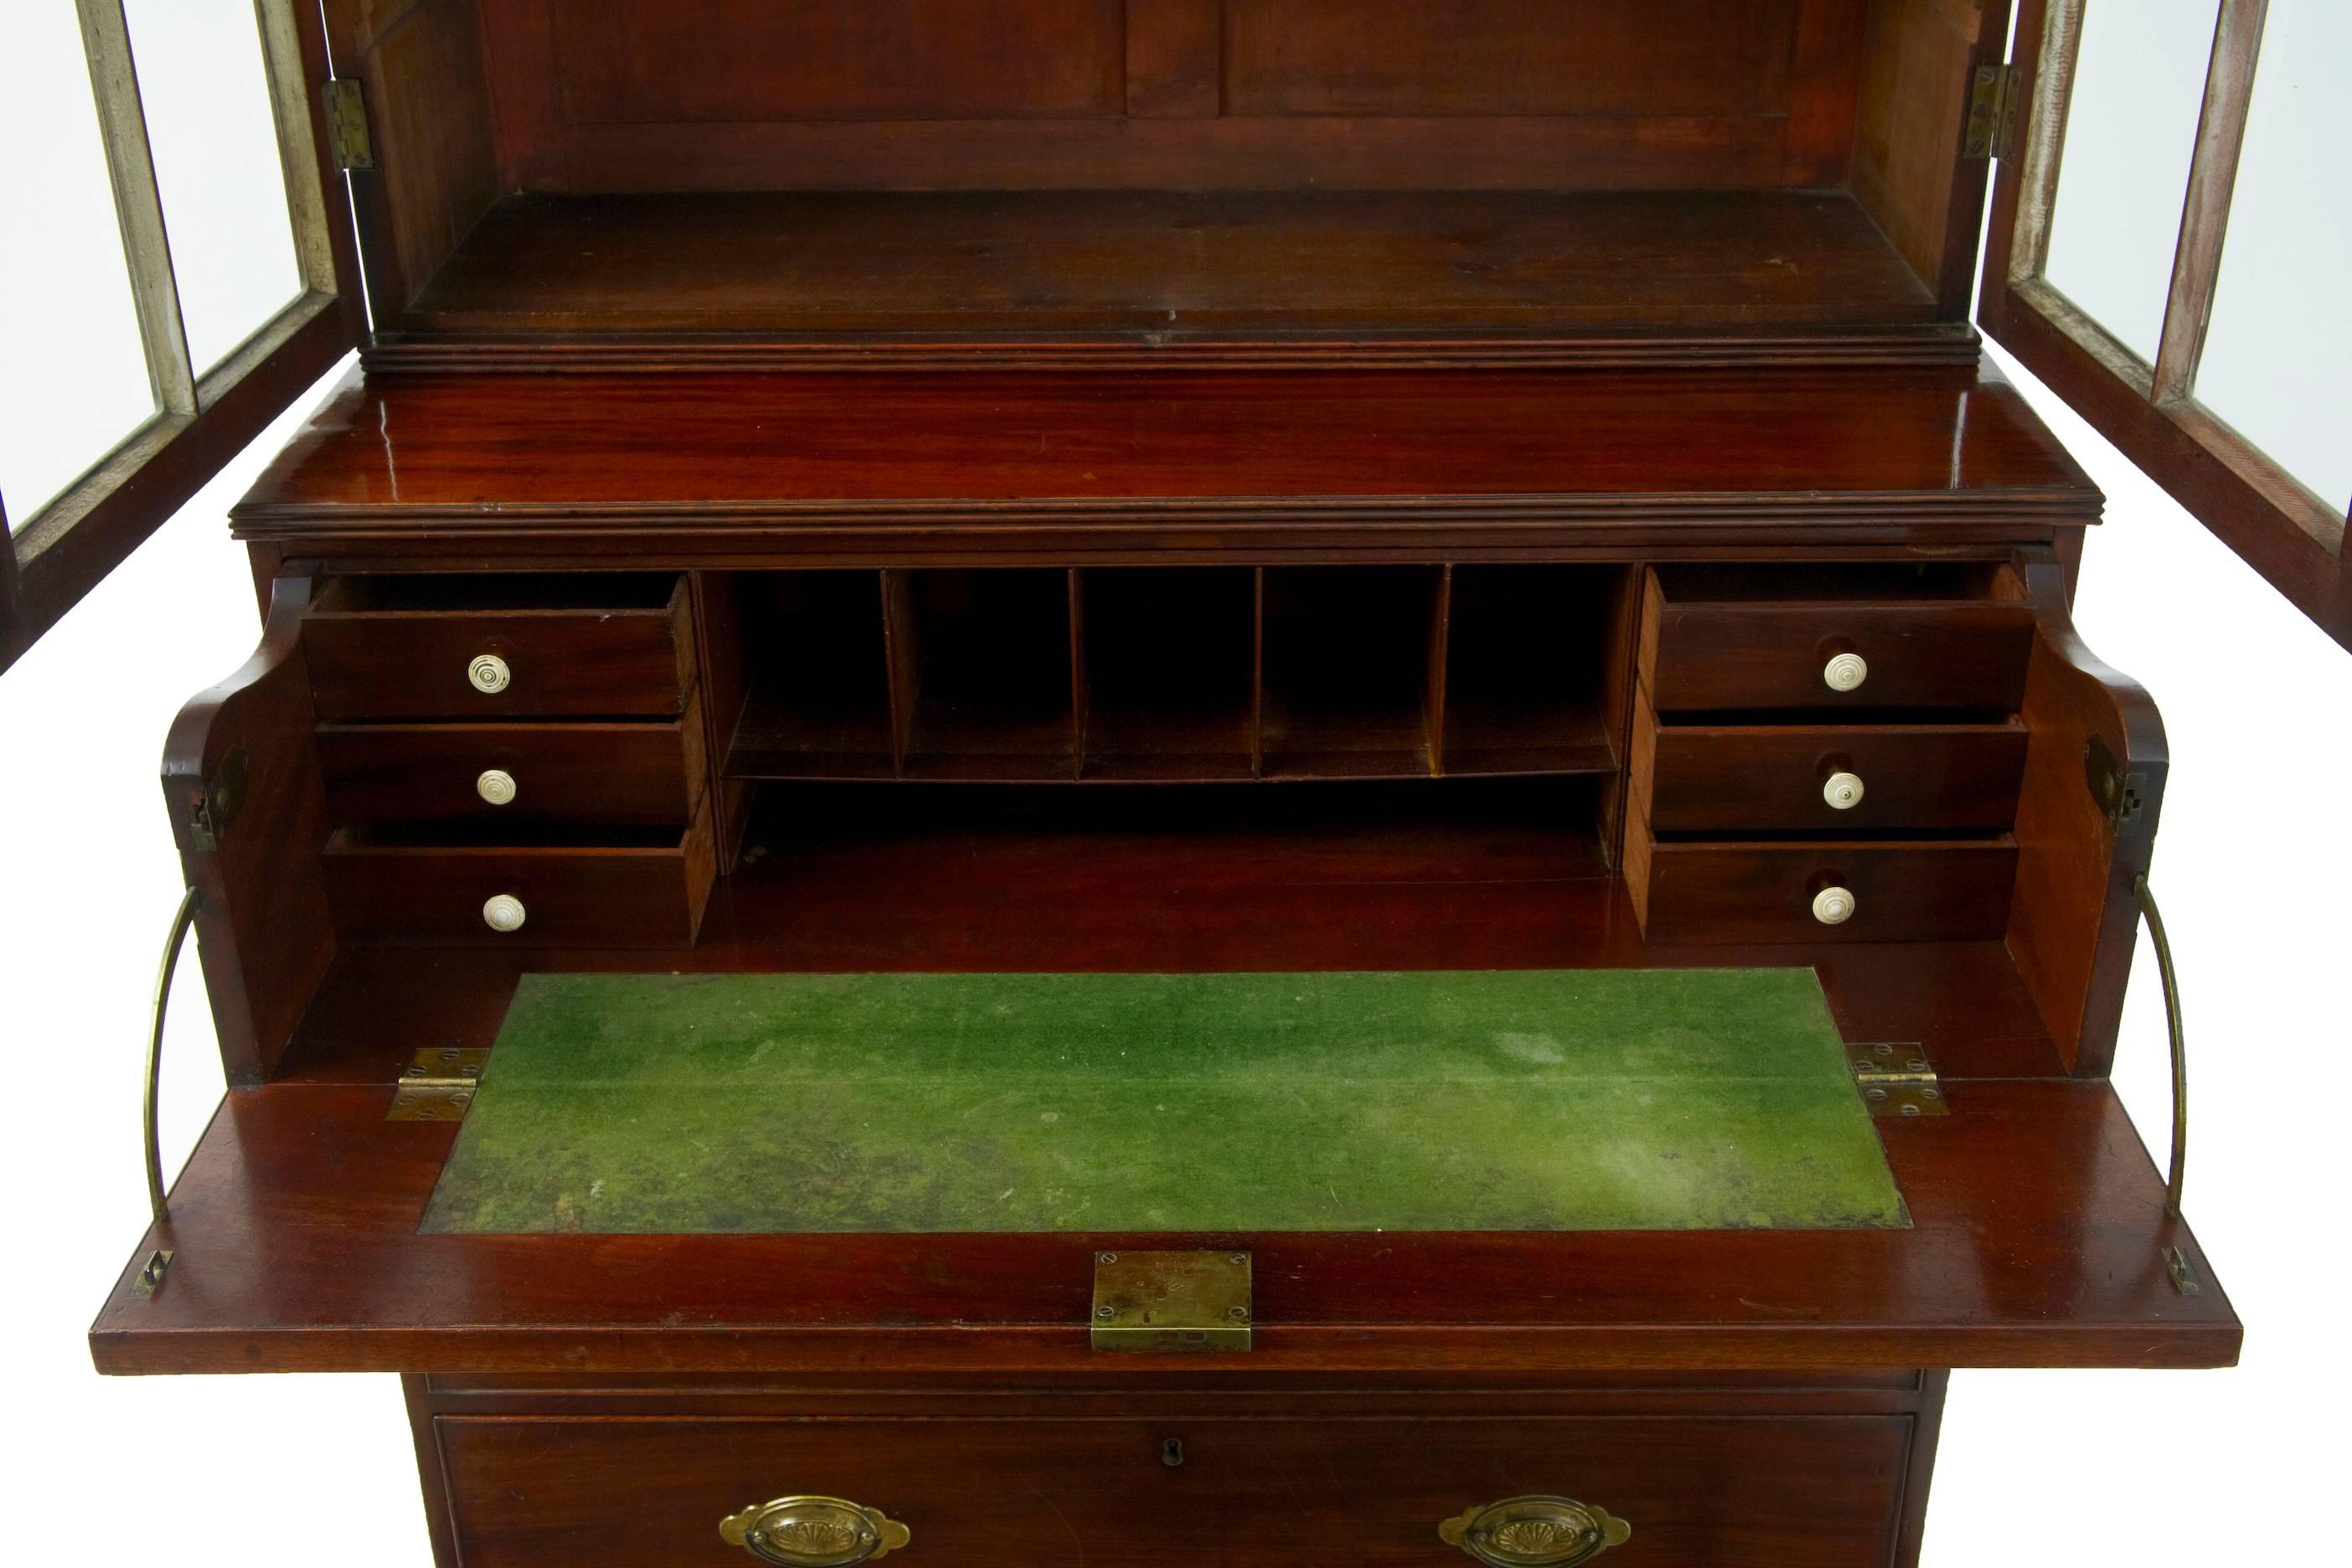 Great Britain (UK) 19th Century William IV Mahogany Secretaire Bookcase